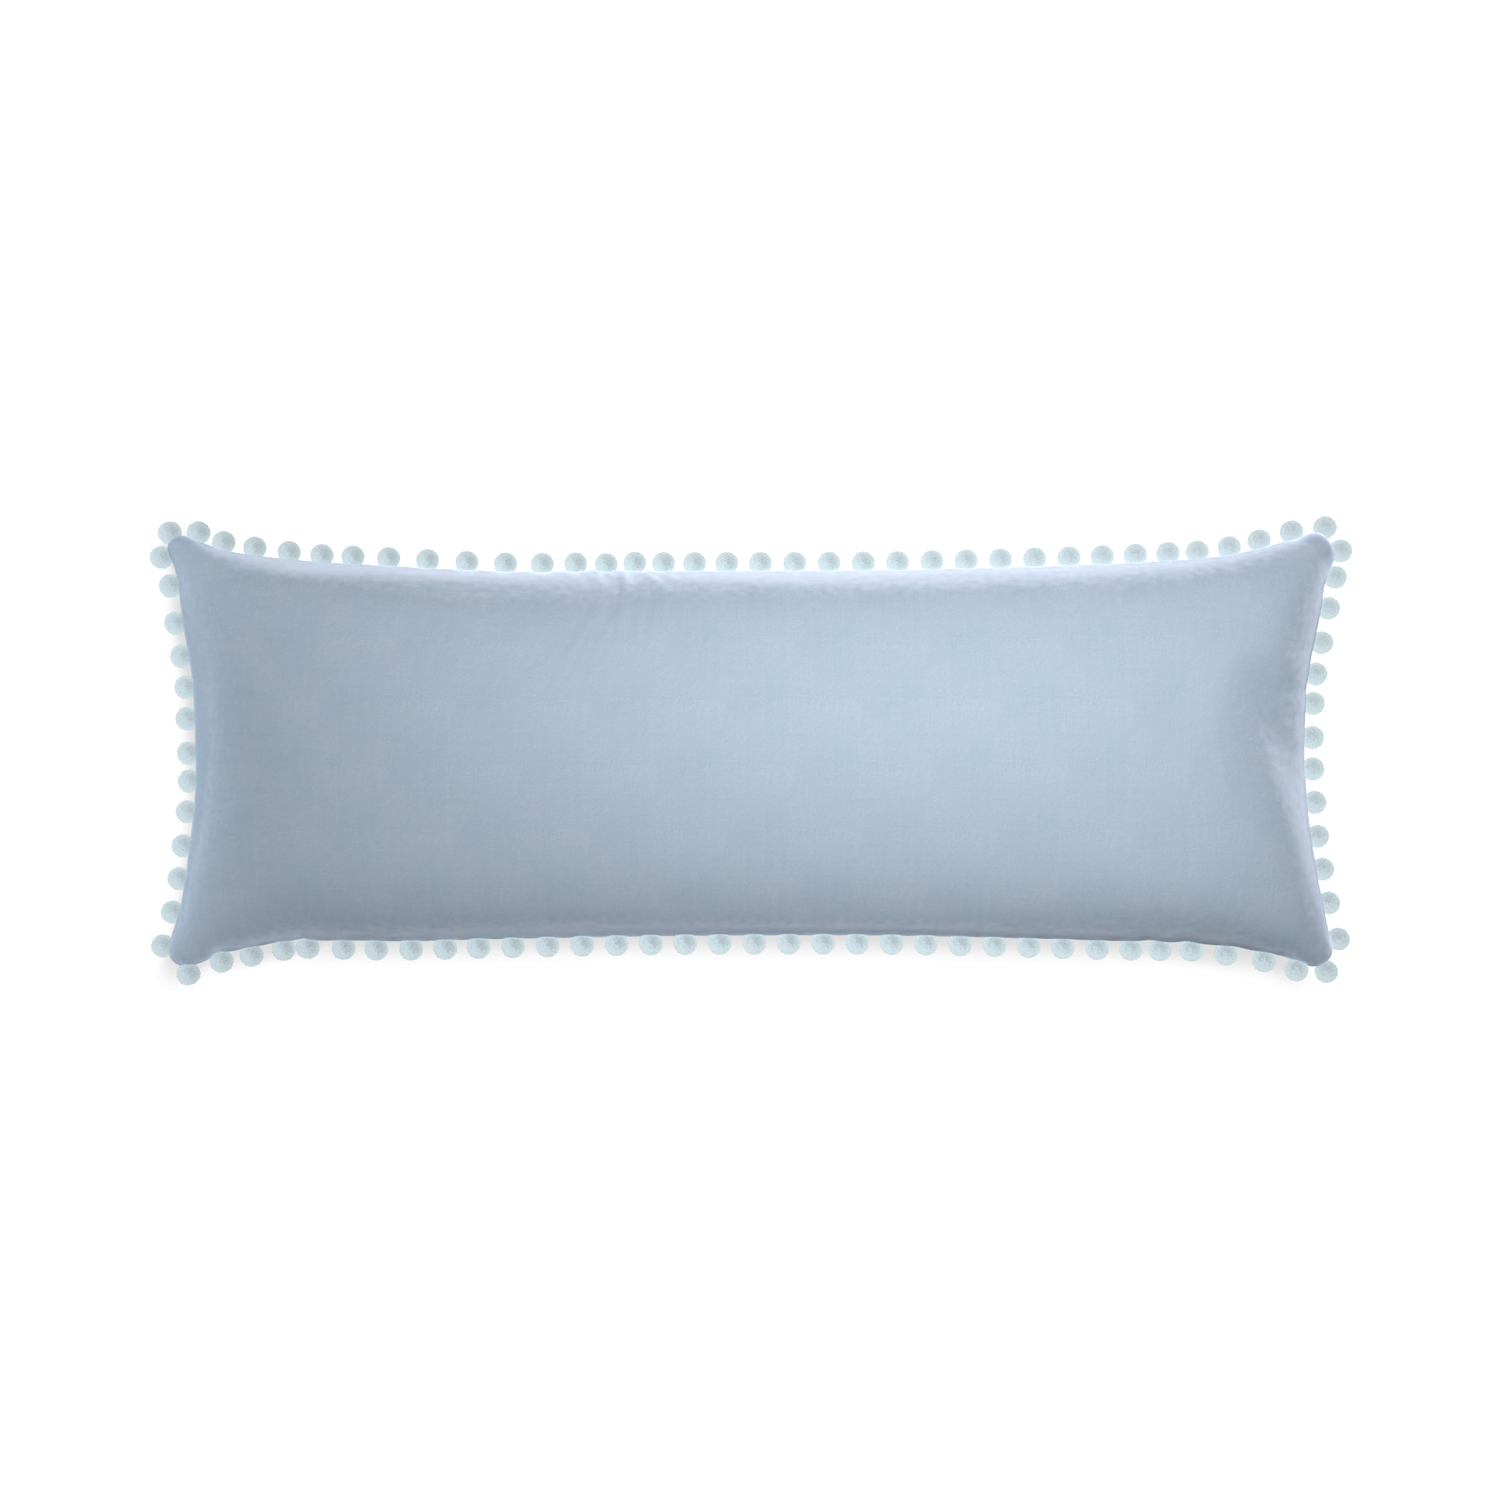 Xl-lumbar sky velvet custom pillow with powder pom pom on white background